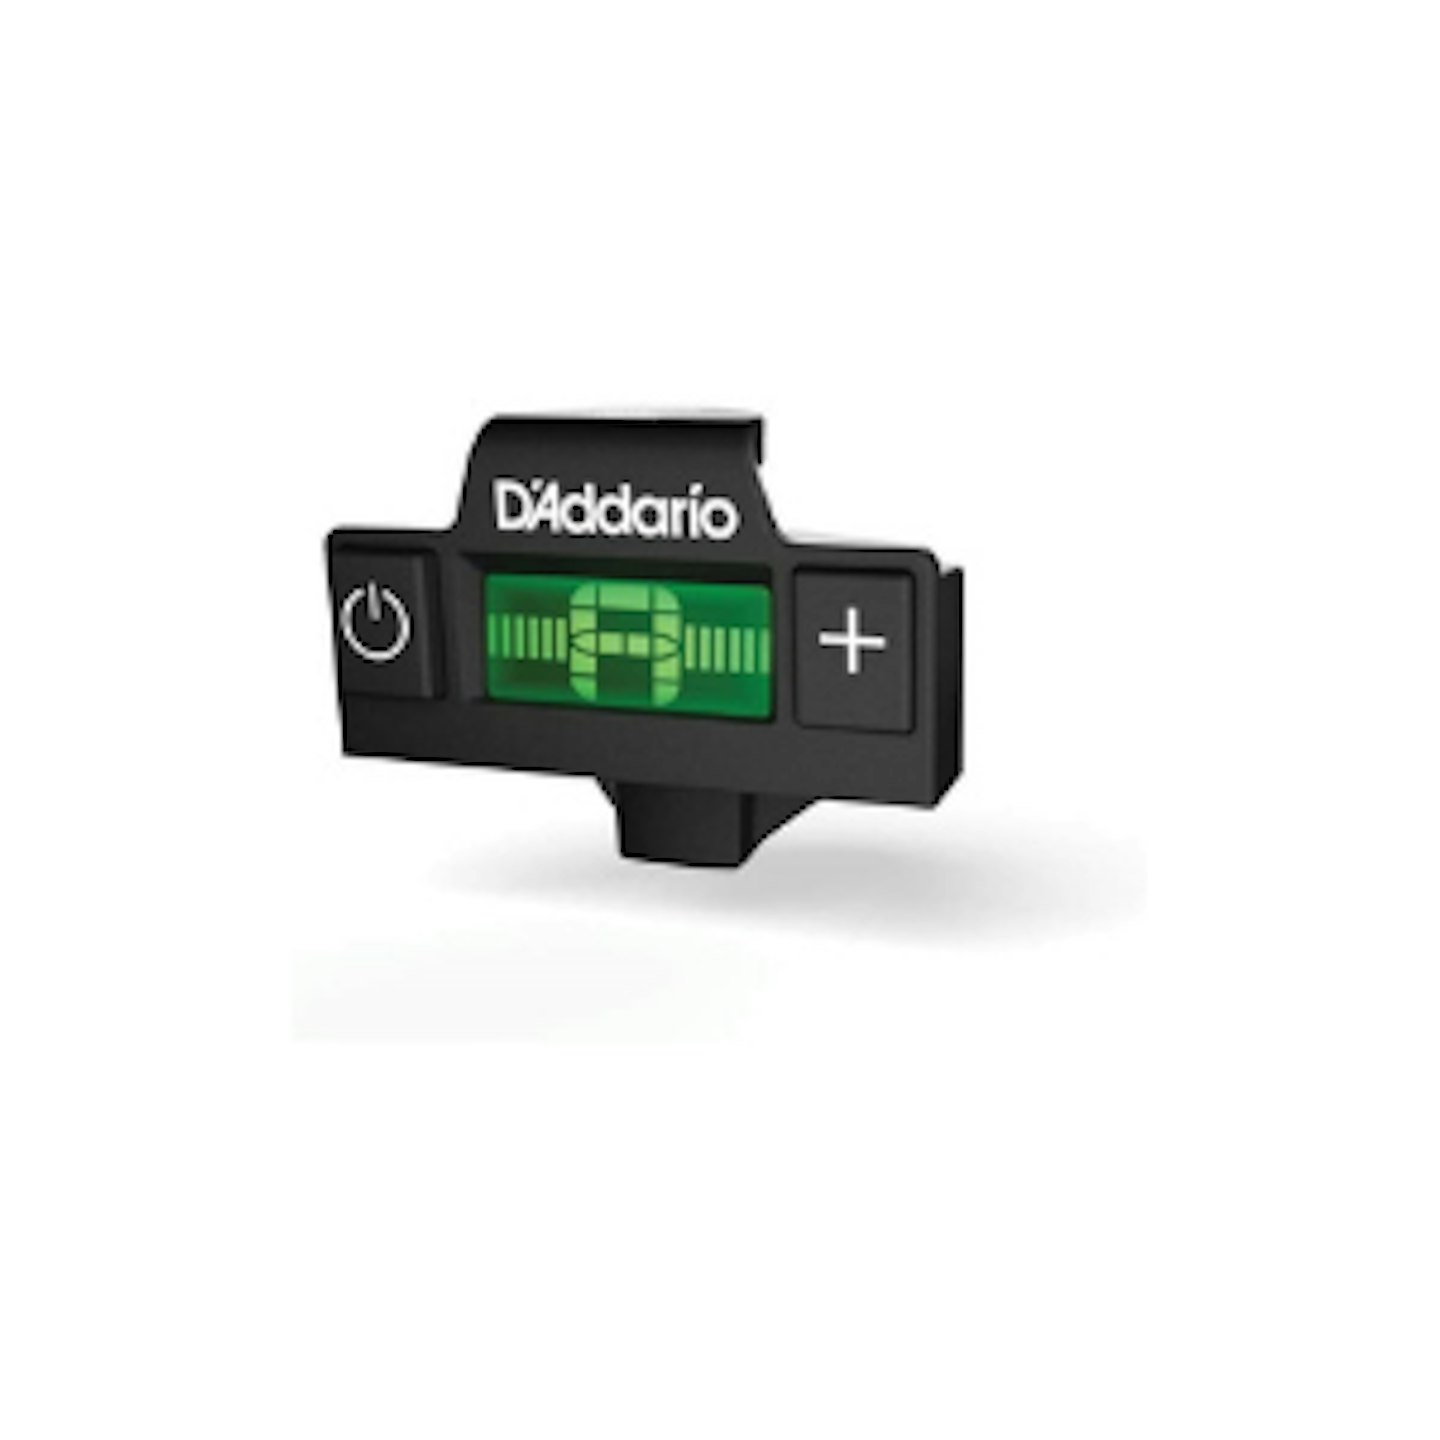 D'Addario Micro Sound Tuner